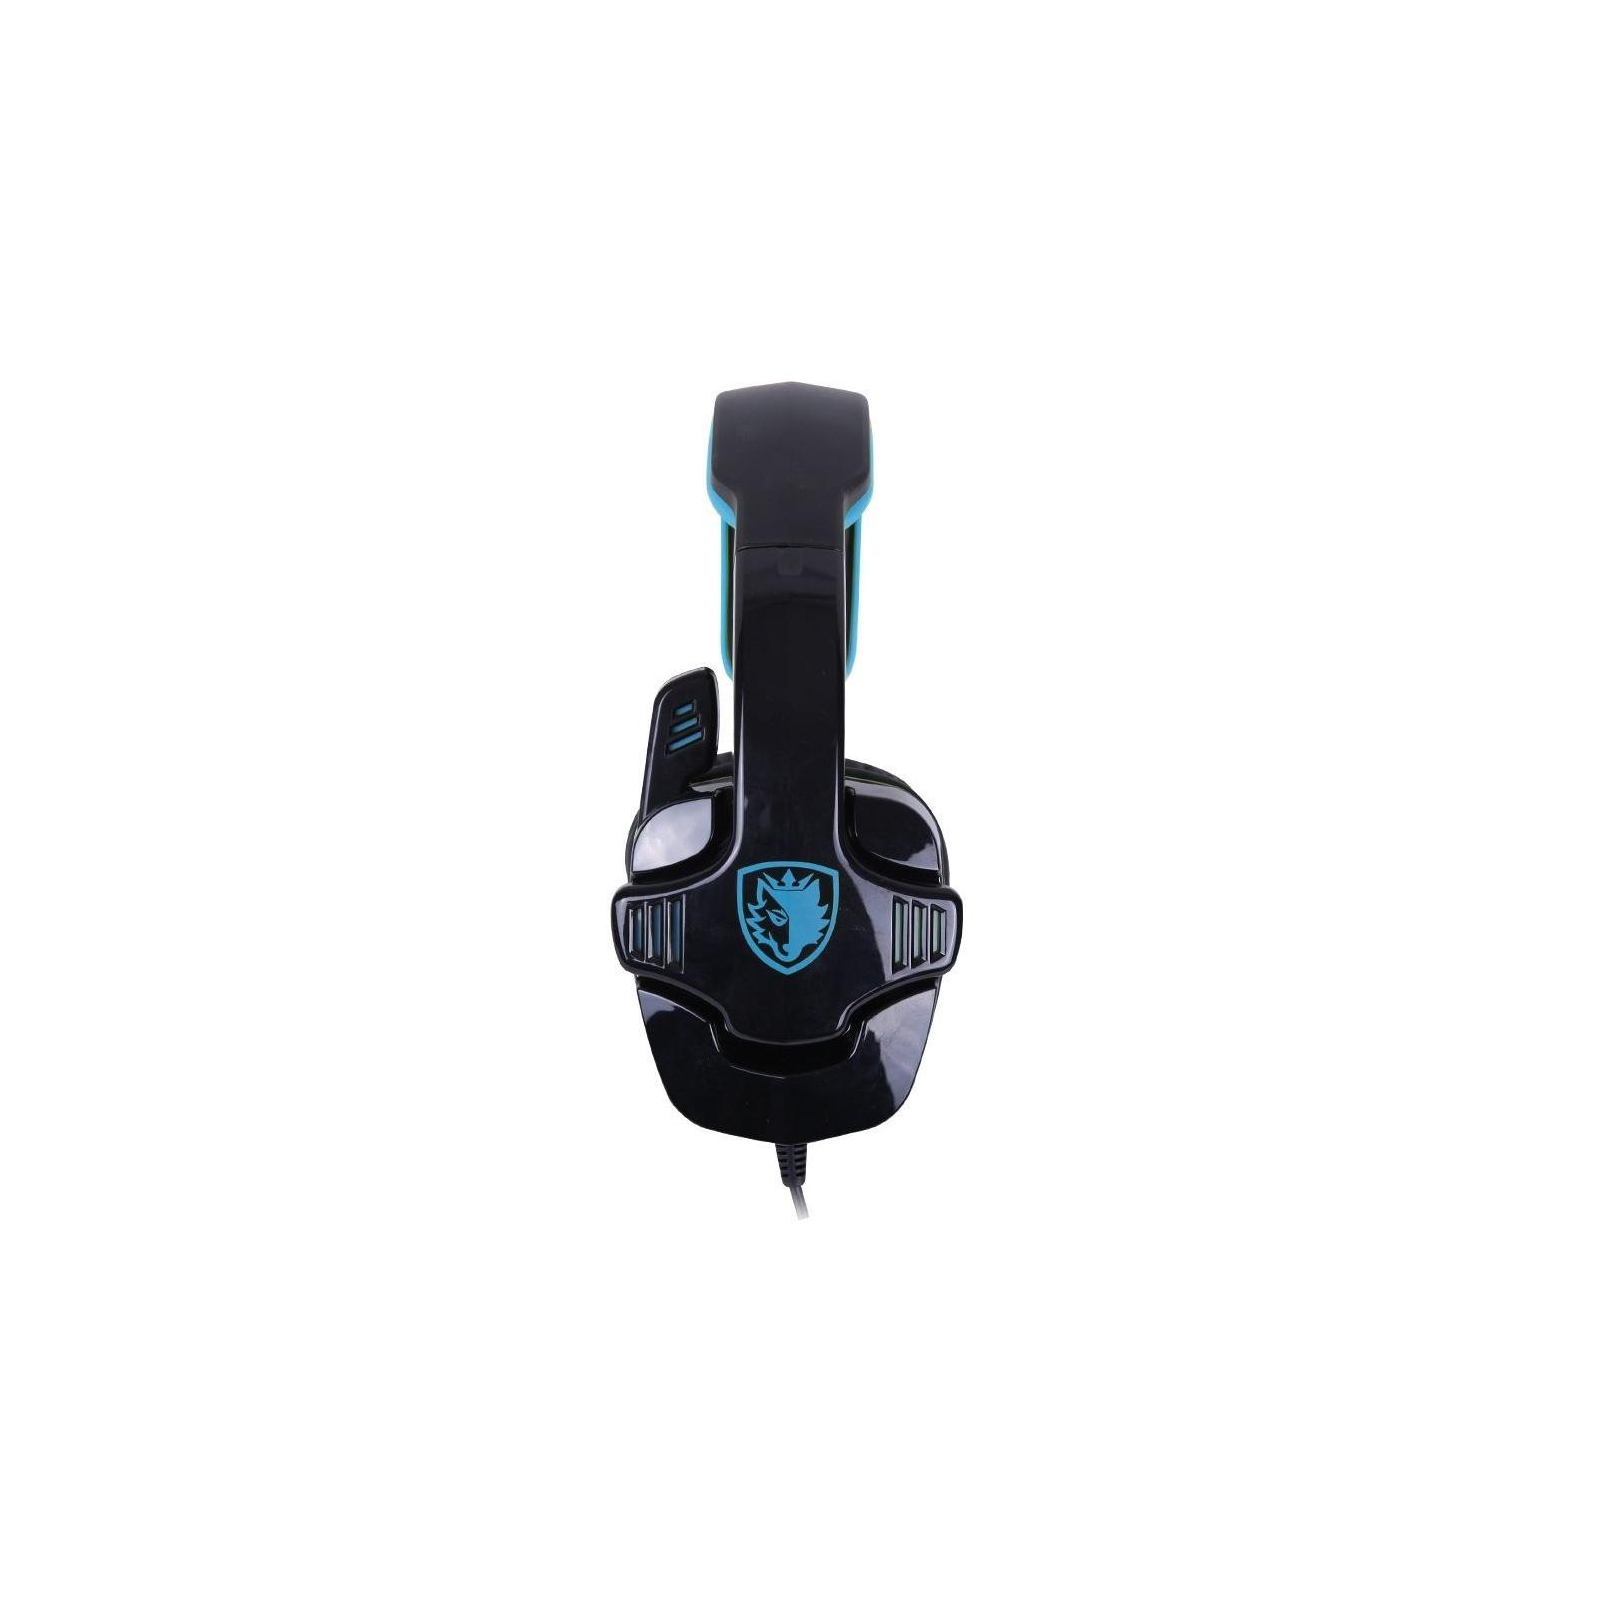 Навушники Sades Gpower Black/Blue (SA708-B-BL) зображення 4